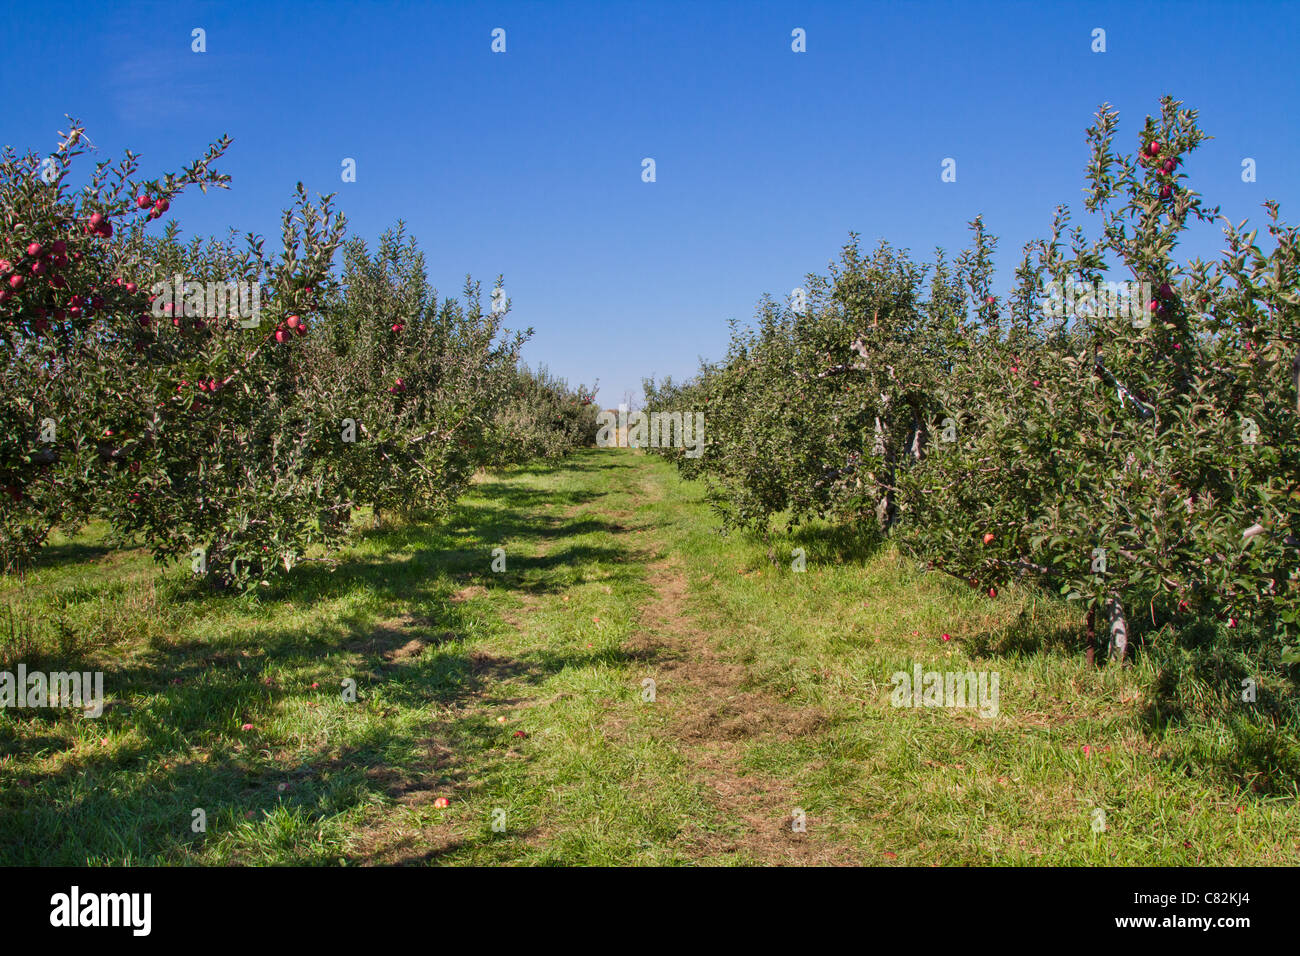 Granja de Frutas huerto de manzanos en flor cosecha grove Foto de stock